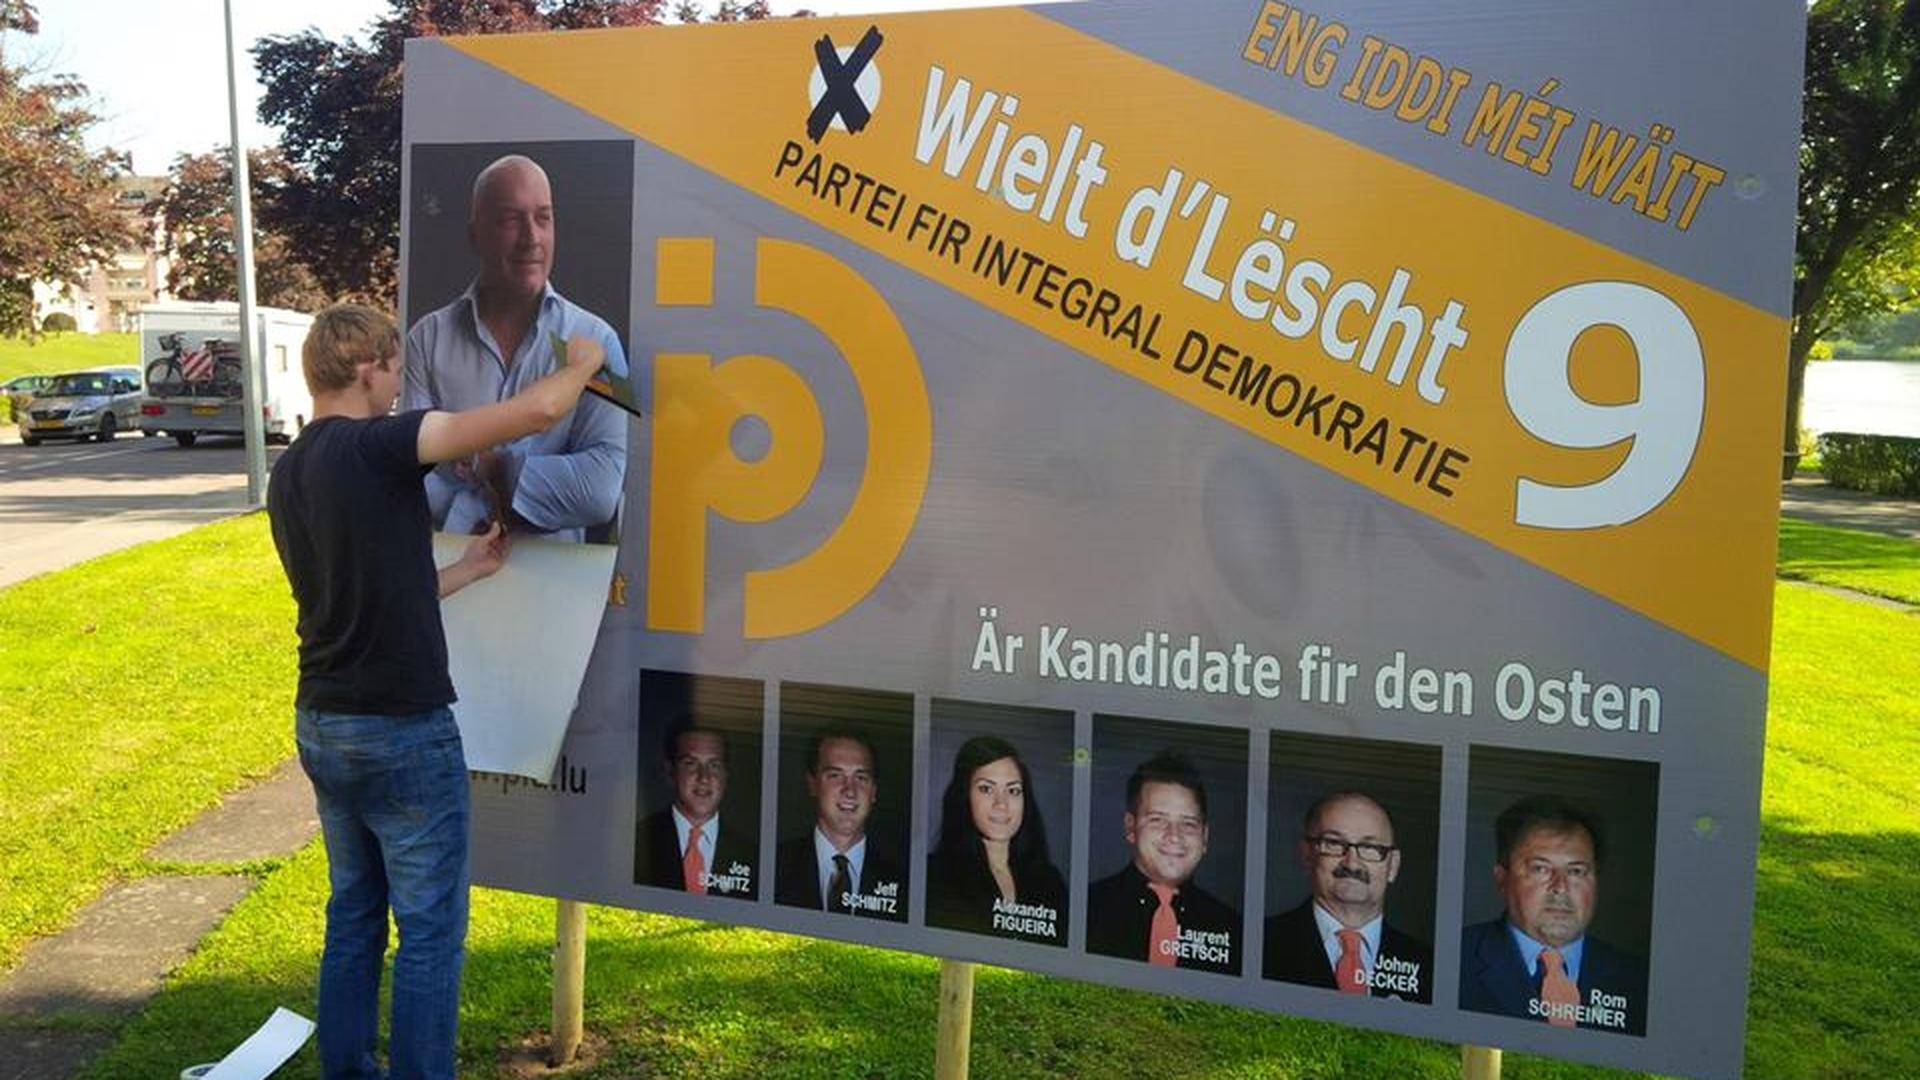 O mais novo partido luxemburguês é o PID (Partido para a Democracia Integral). O PID foi criado em Junho deste ano pelo deputado independente e antigo membro do ADR, Jean Colombera. Em todos os cartazes, a mensagem é a mesma: "Eng iddi méi wäit" ("Uma ideia à frente").